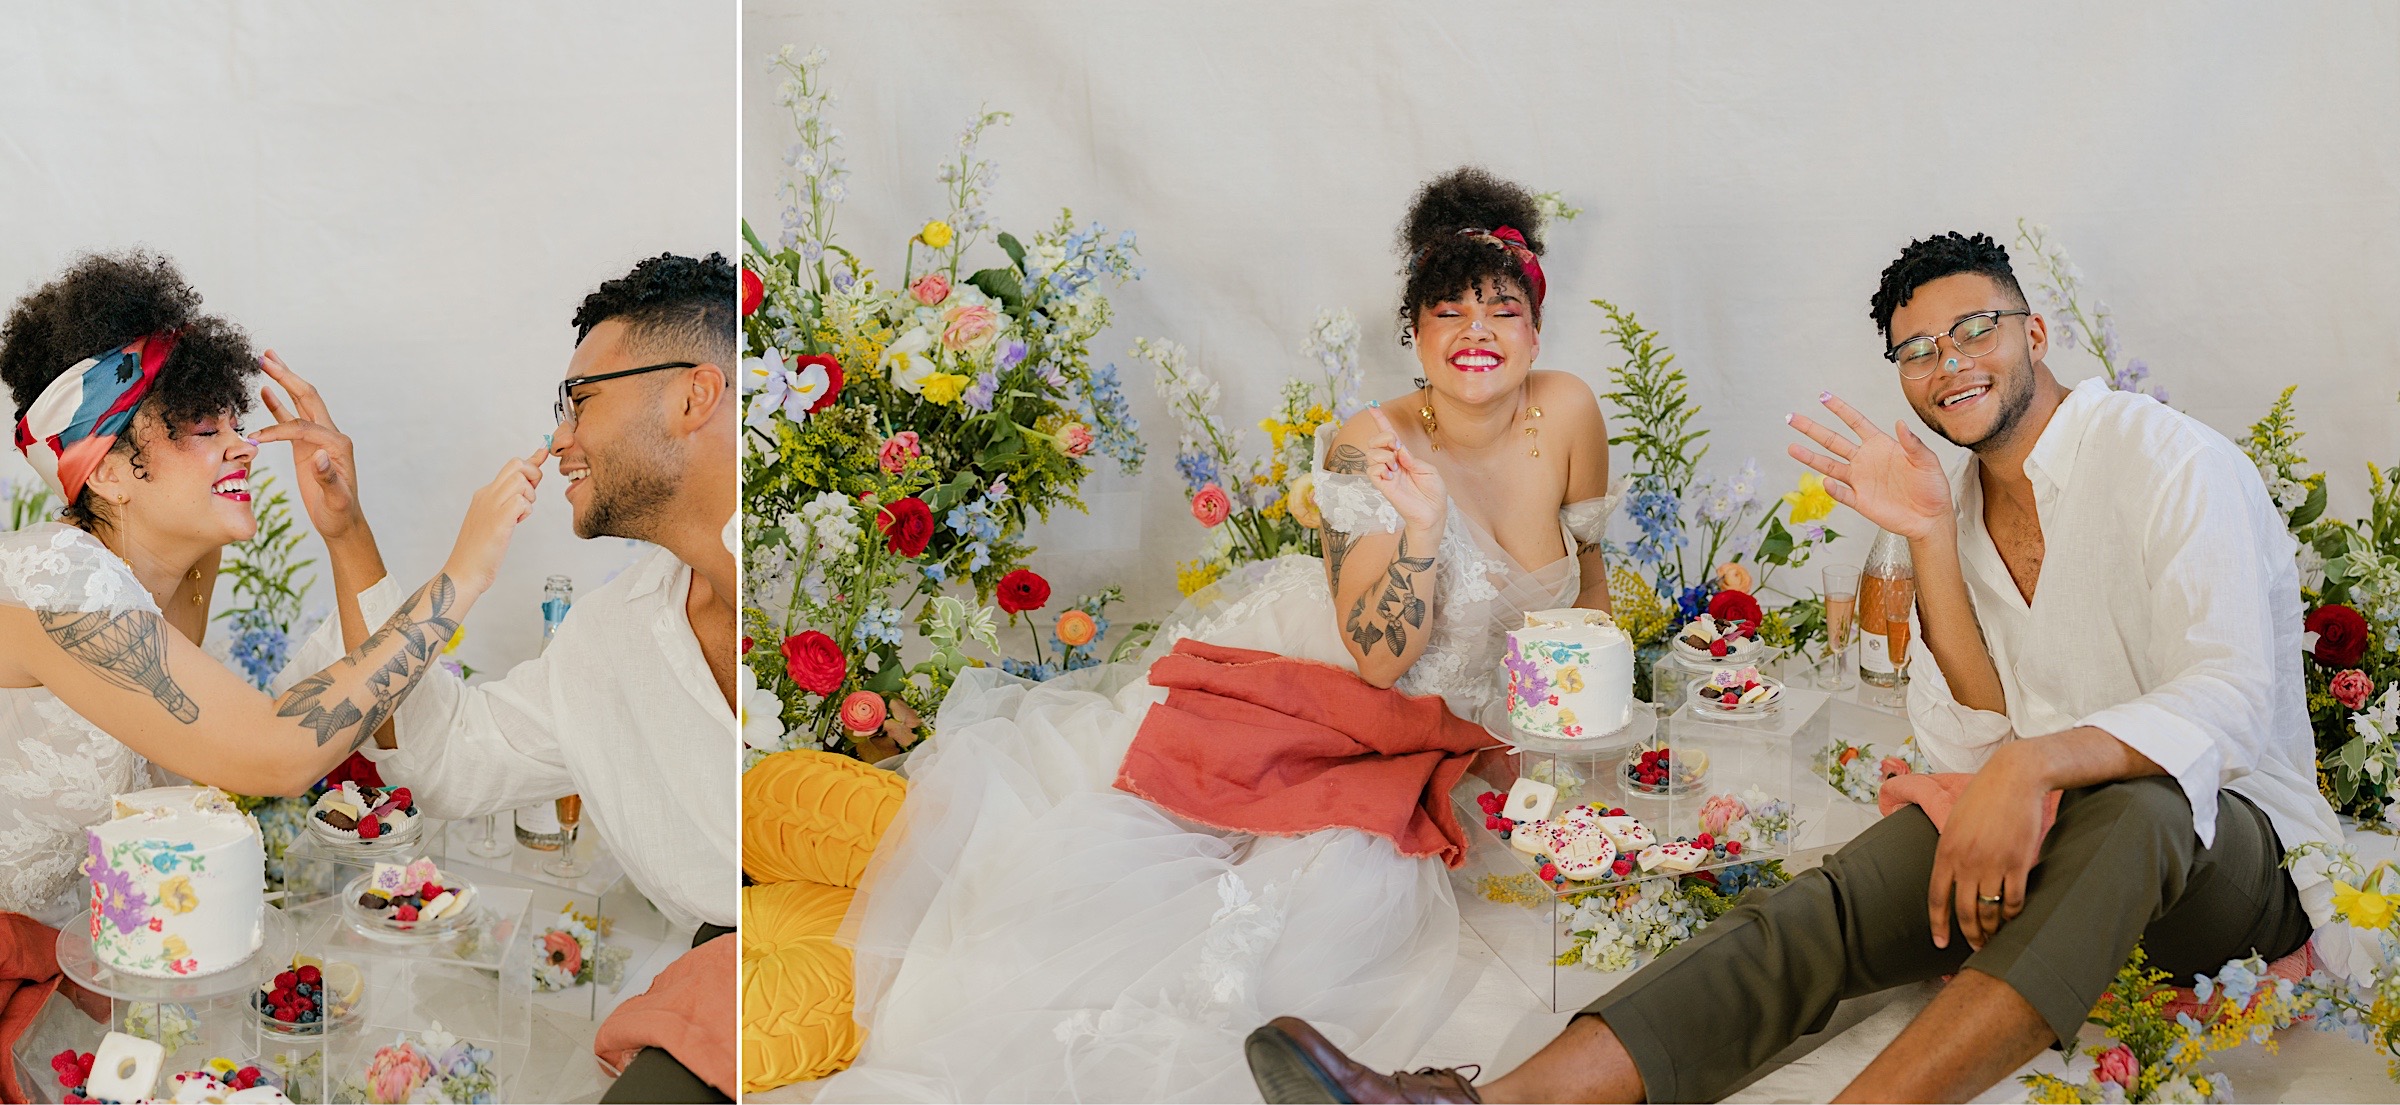 fun-wedding-picnic-with-cake